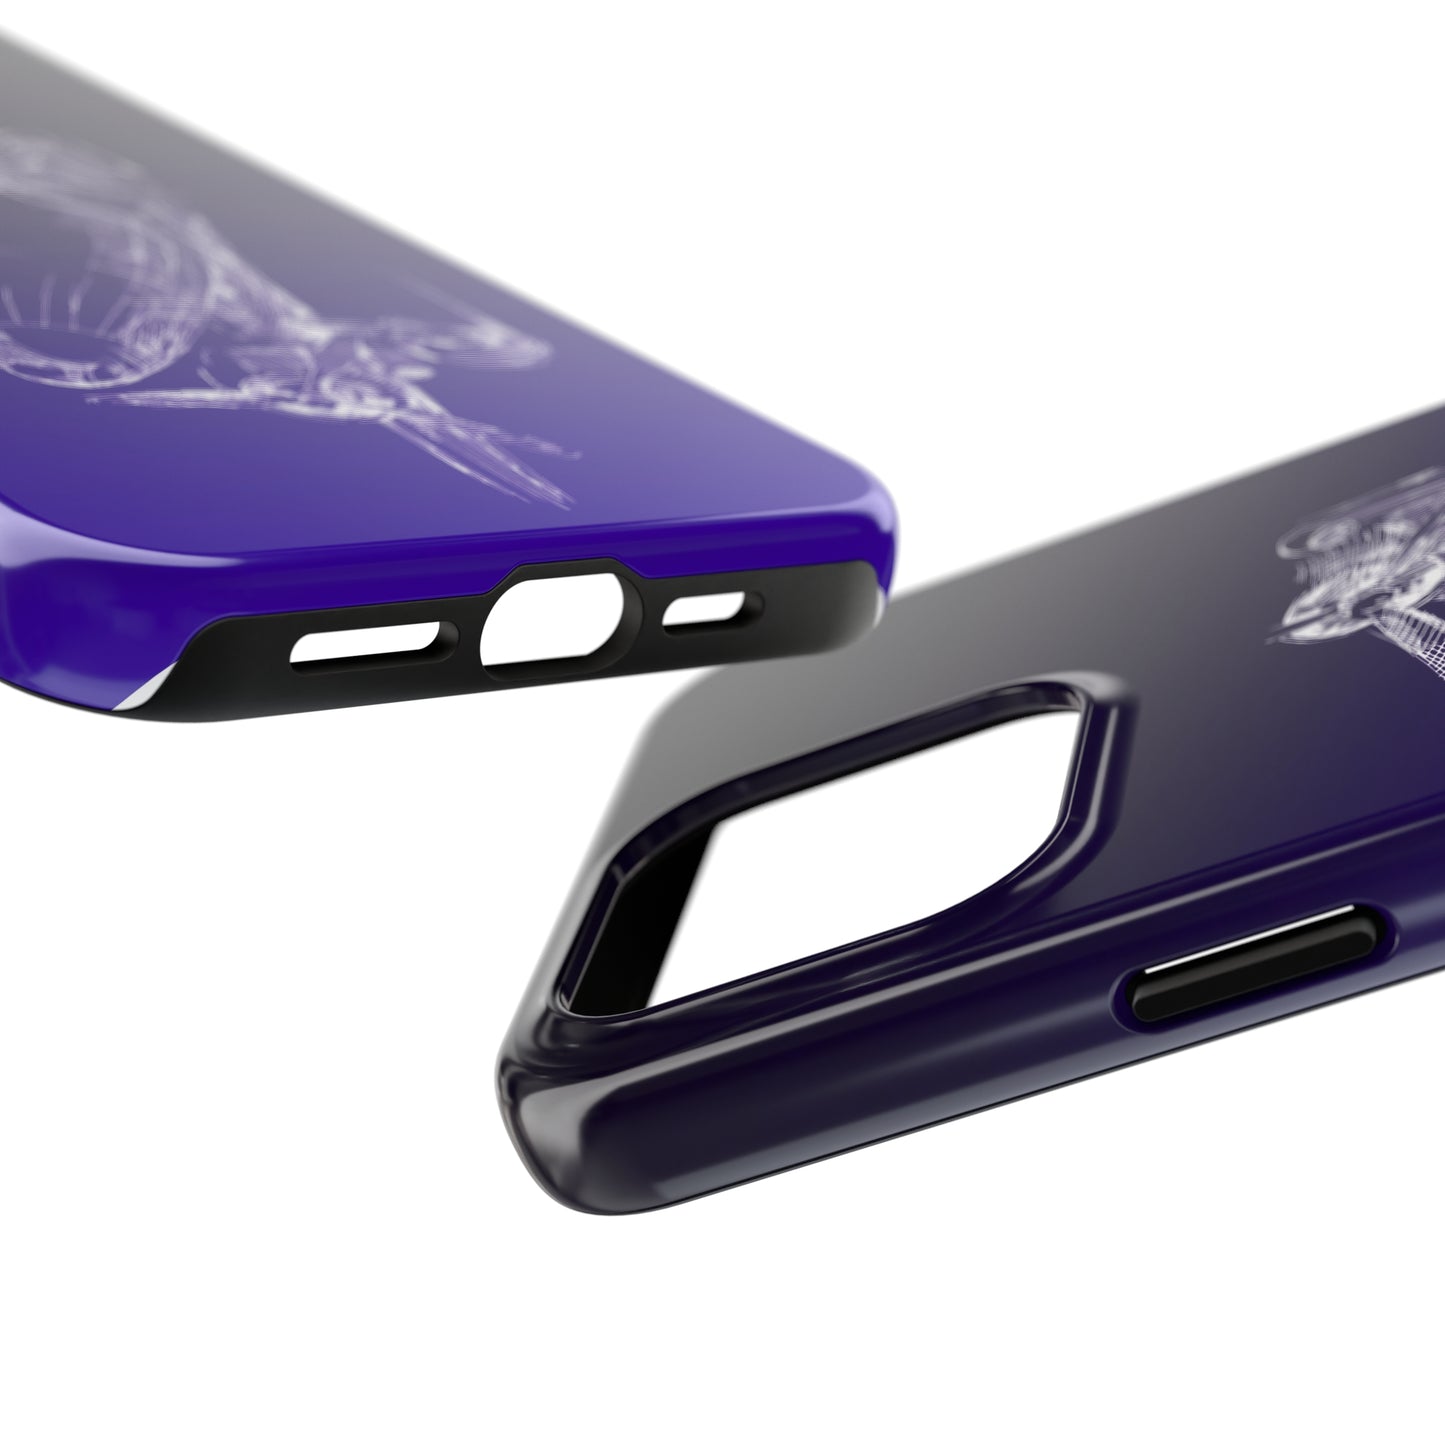 Aero 1 (purple) tough phone cases